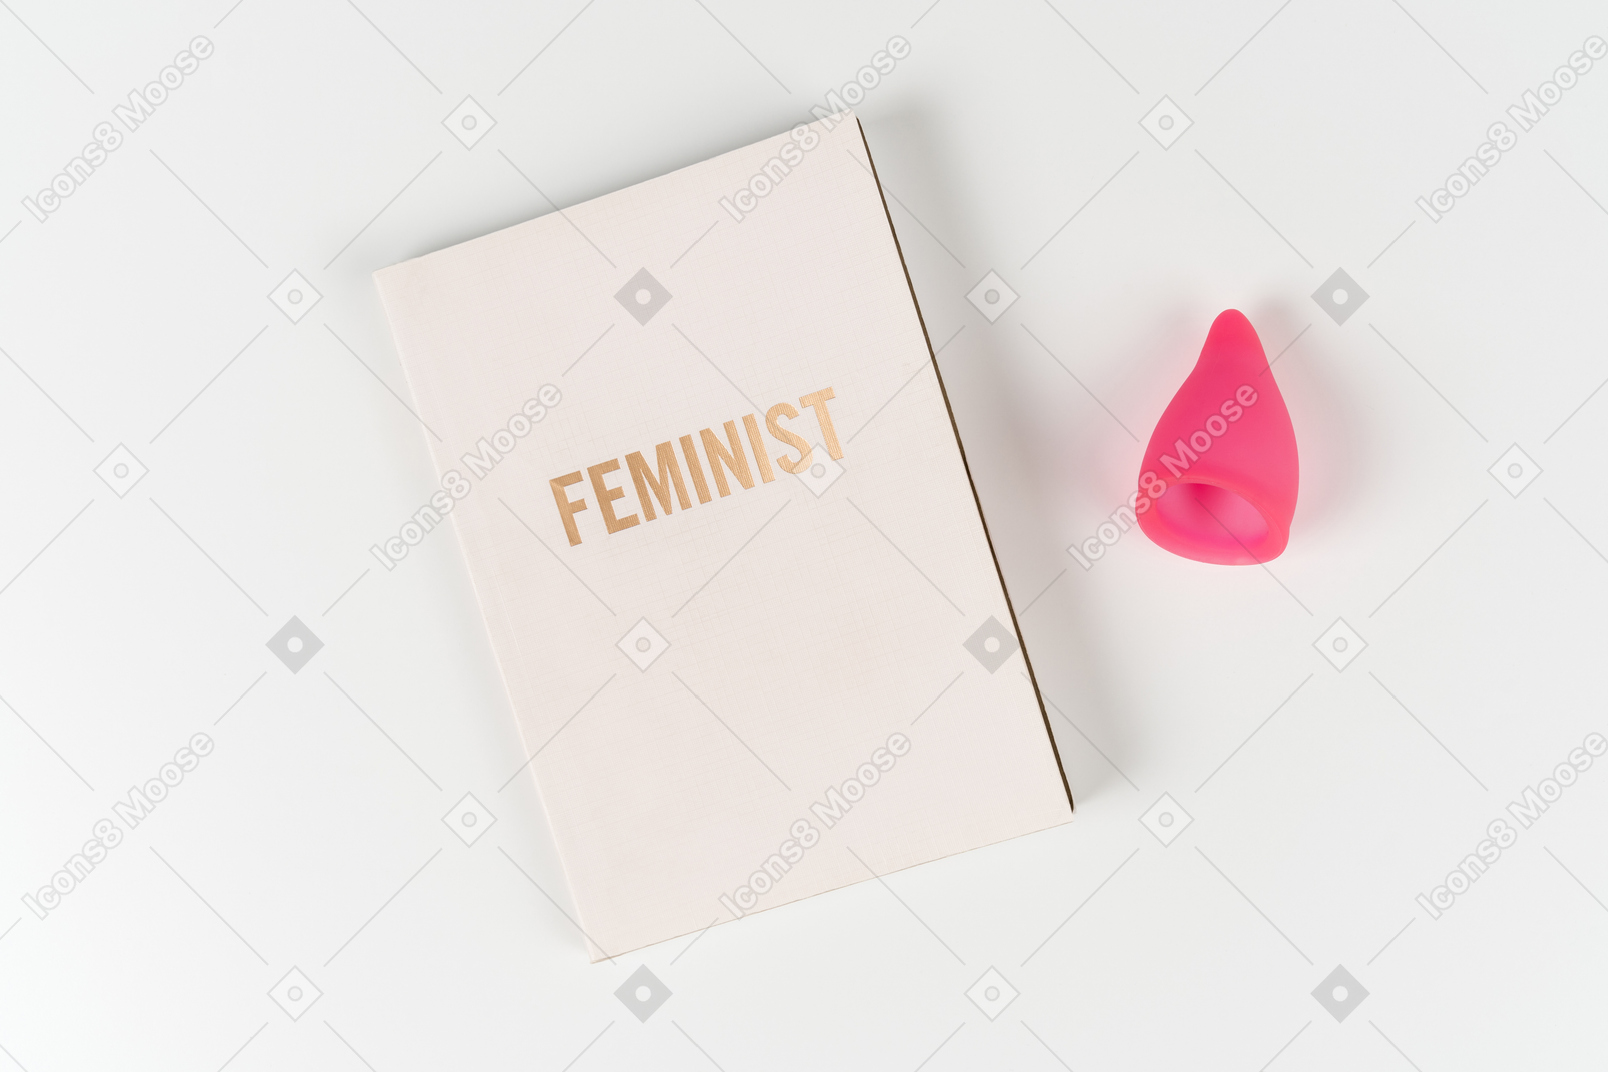 Libro femminista e coppetta mestruale su sfondo bianco